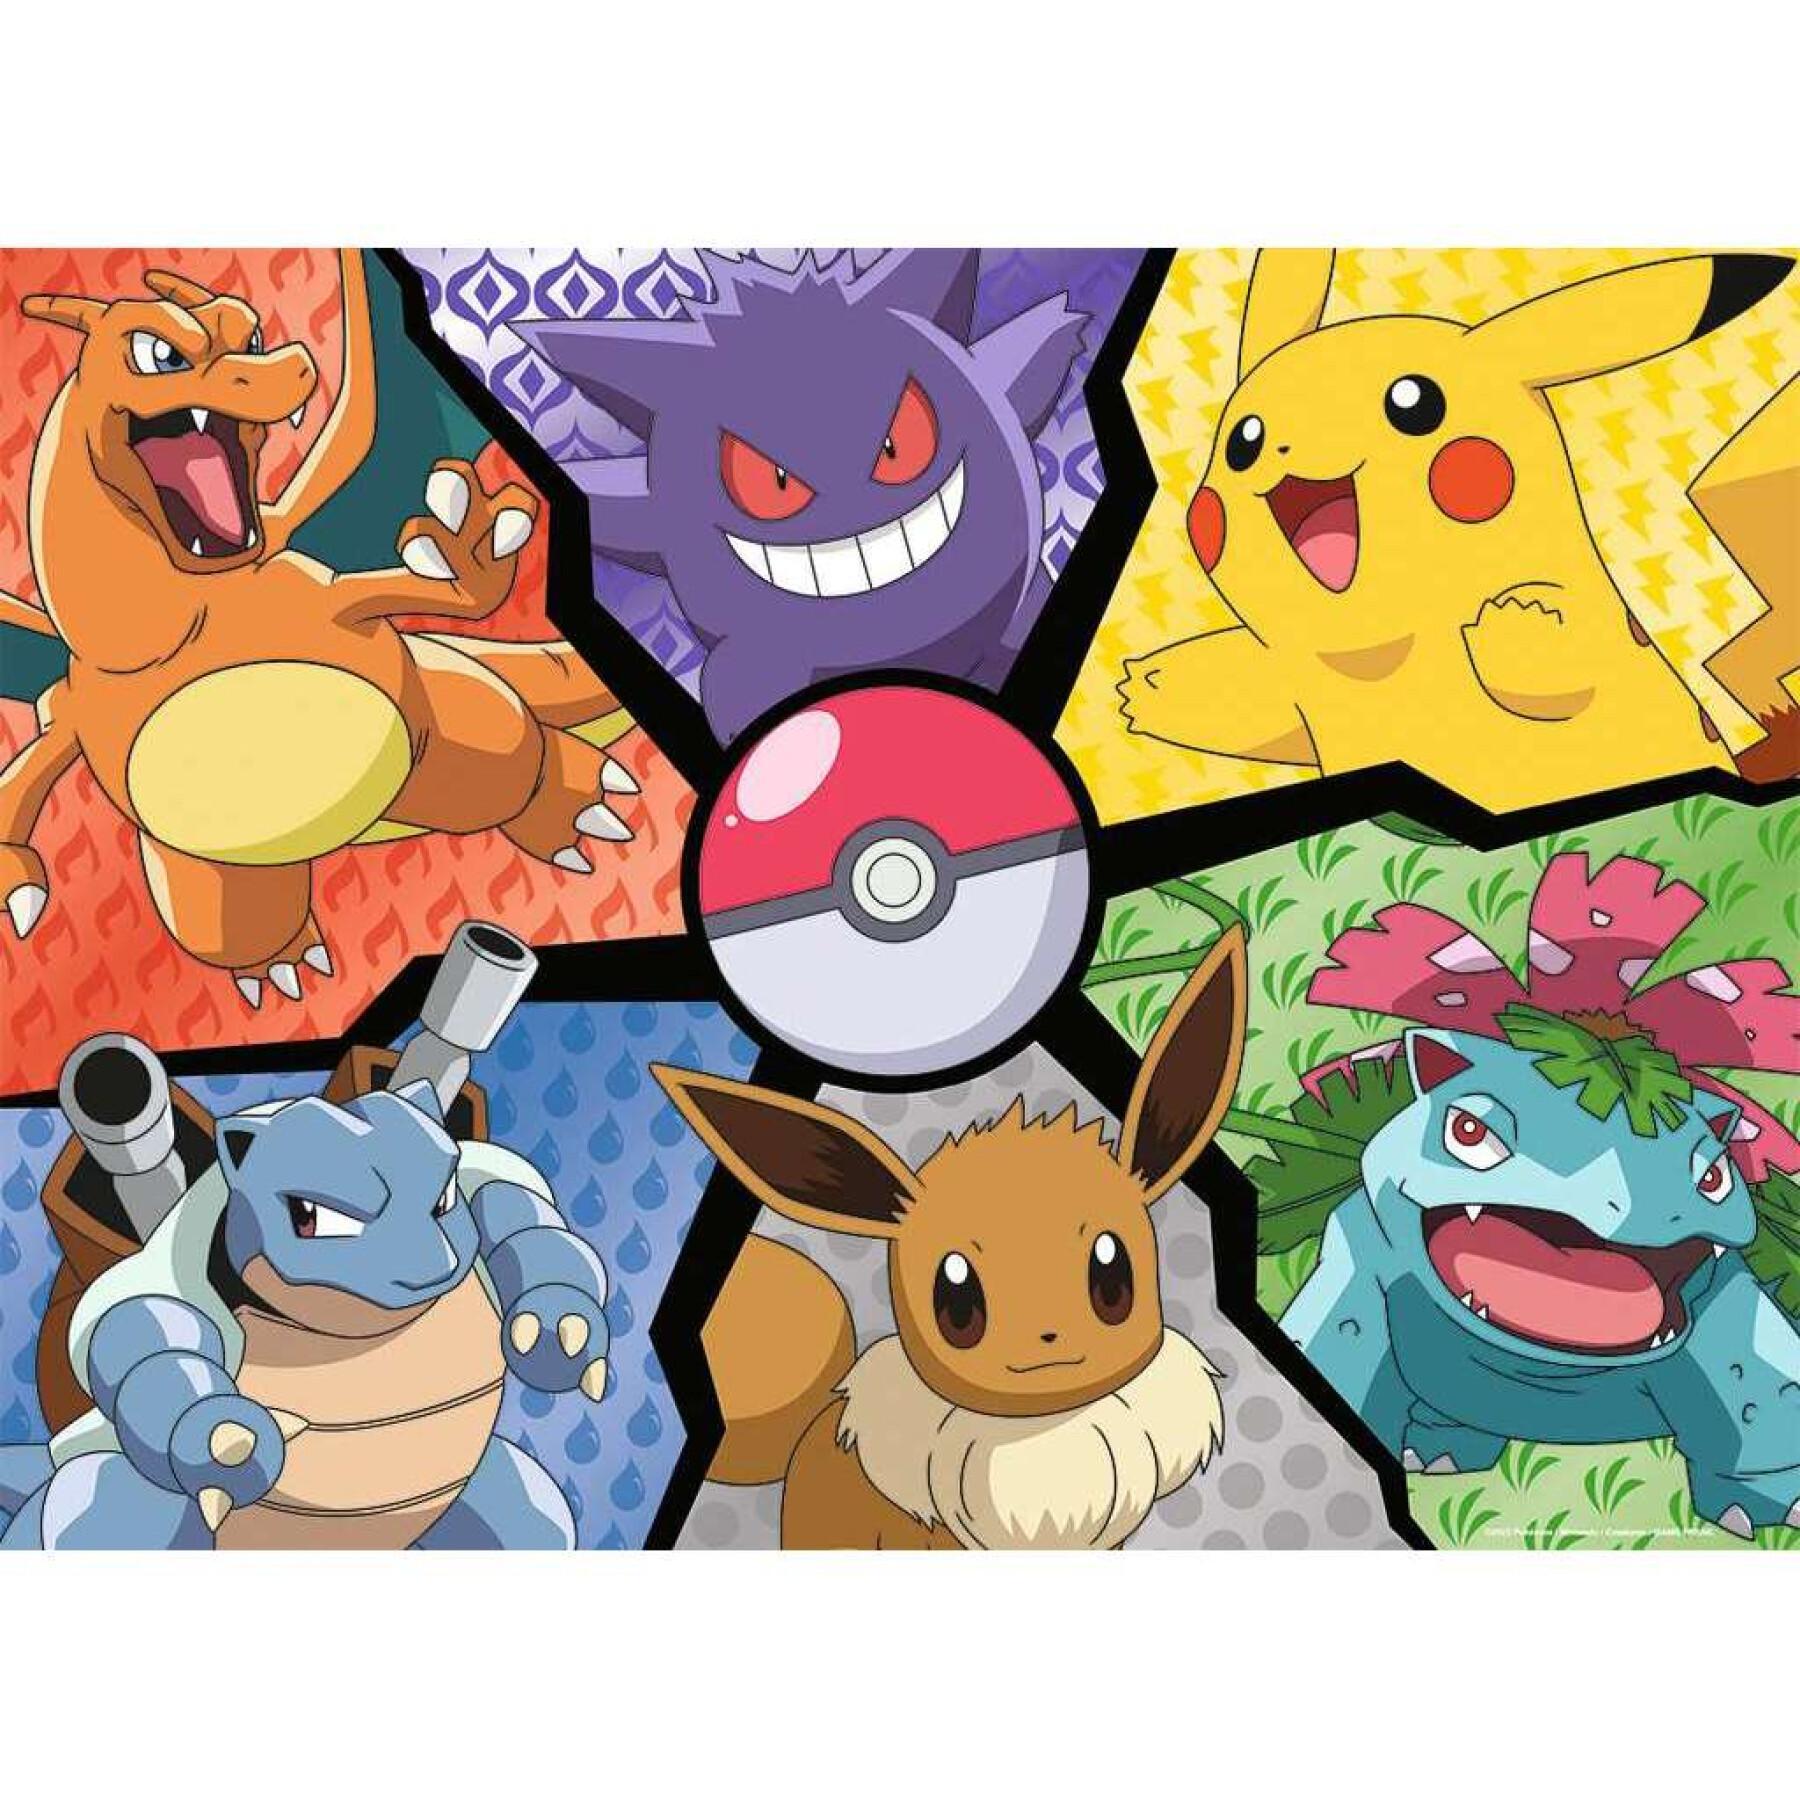 Puzzle da 100 pezzi di pikachu, evoli e co. Ravensburger Pokémon